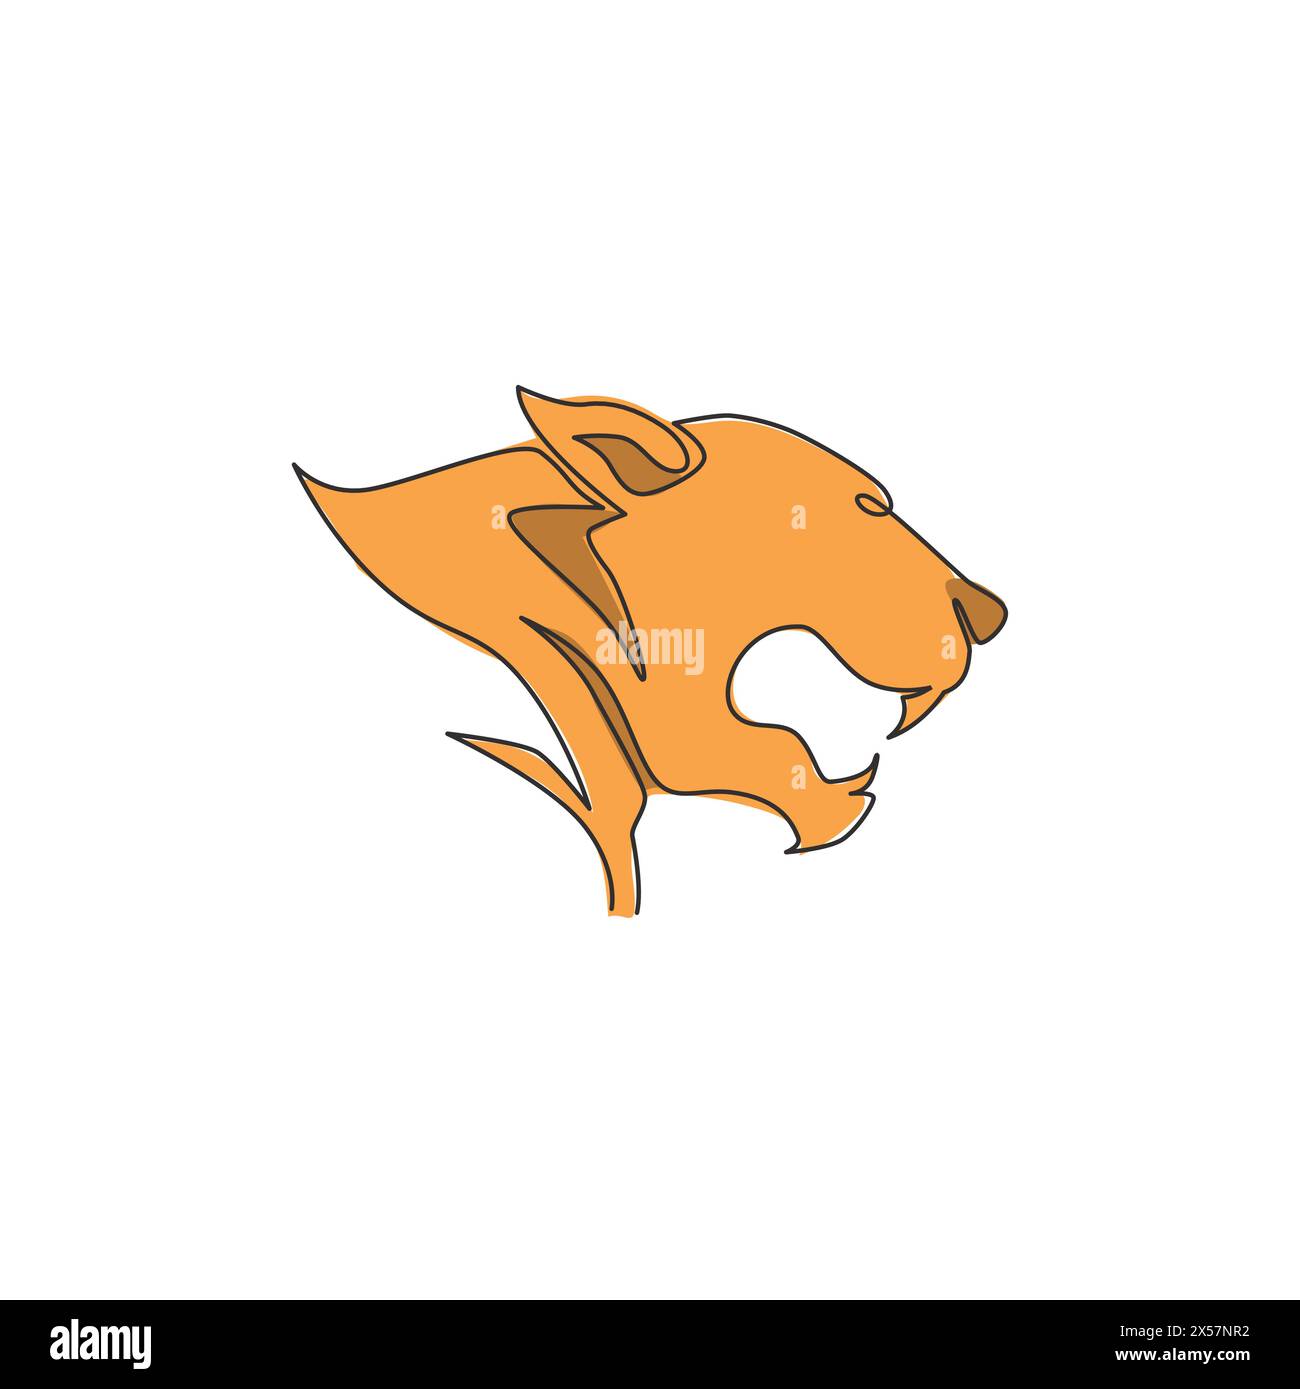 Un seul dessin de ligne de tête de léopard sauvage pour l'identité de logo d'entreprise. Fort concept de mascotte d'animal mammifère jaguar pour la conservation nationale Illustration de Vecteur